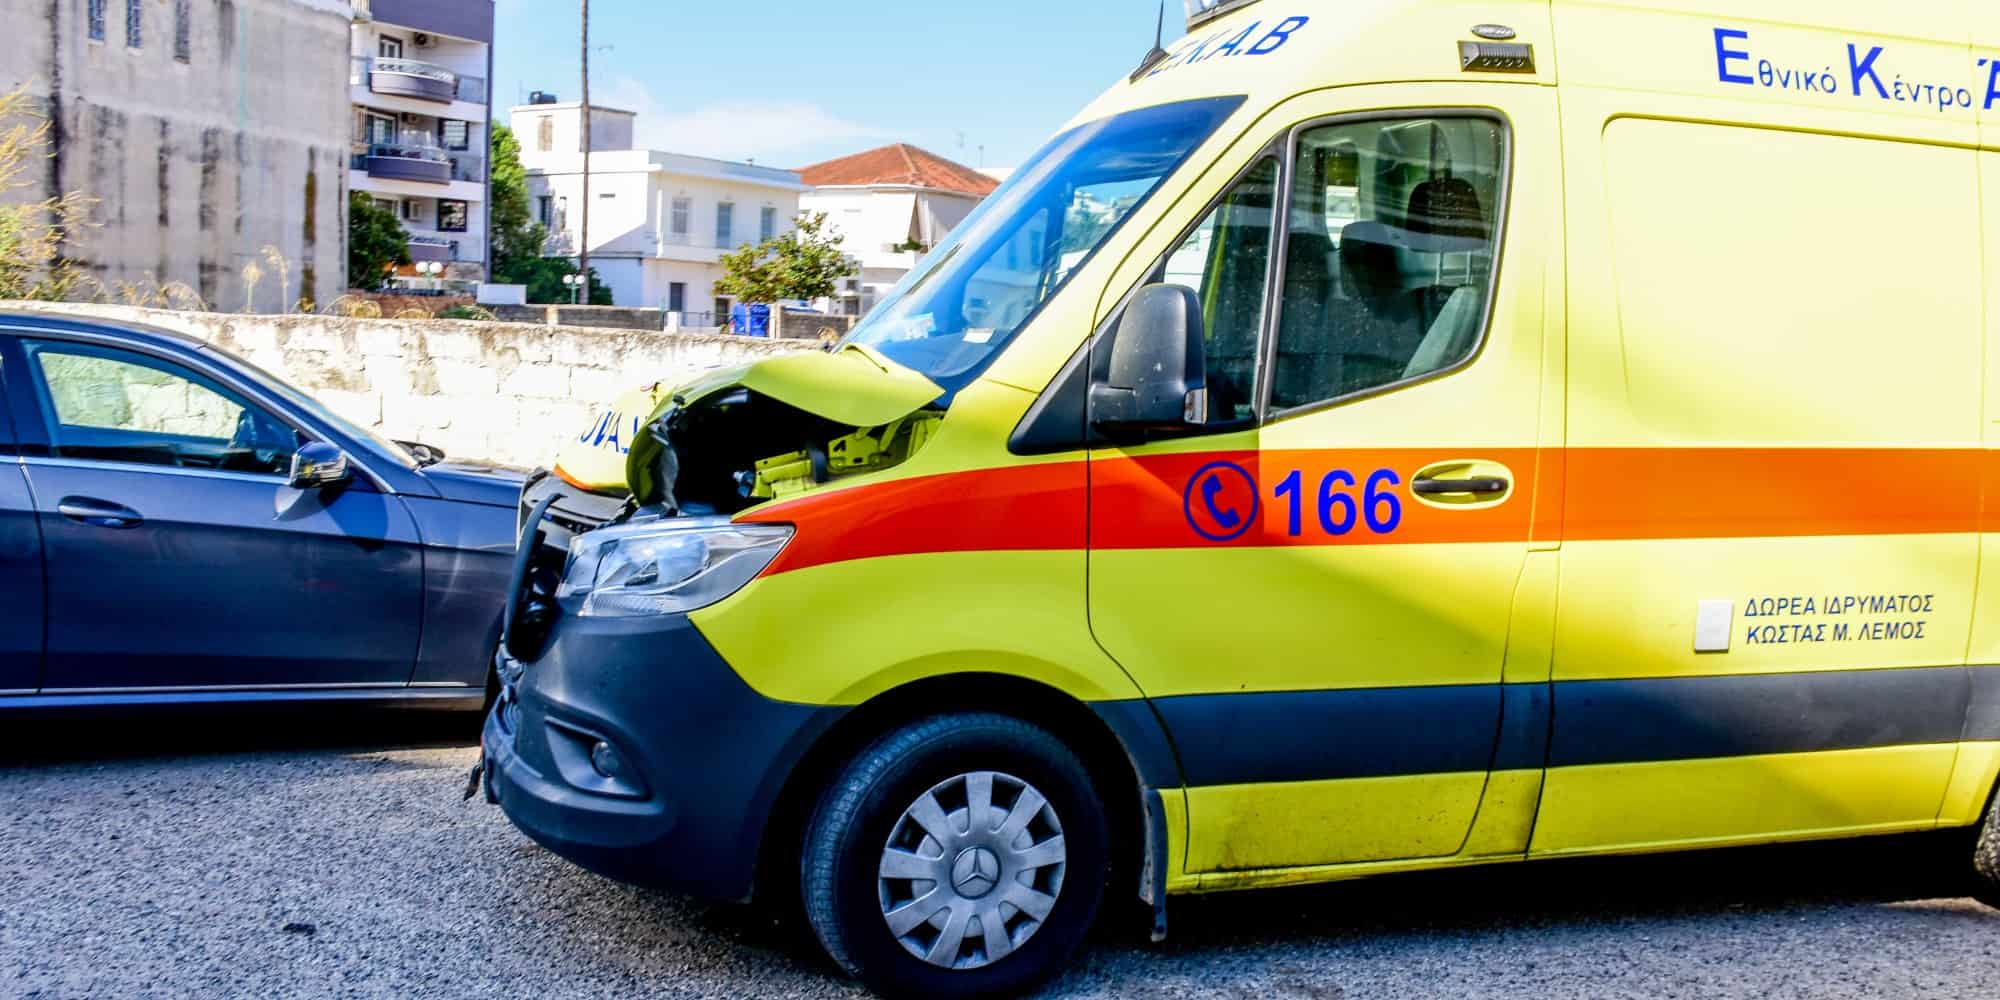 Ασθενοφόρο στο Άργος που μετέφερε ασθενή παρέσυρε και σκότωσε ηλικιωμένη